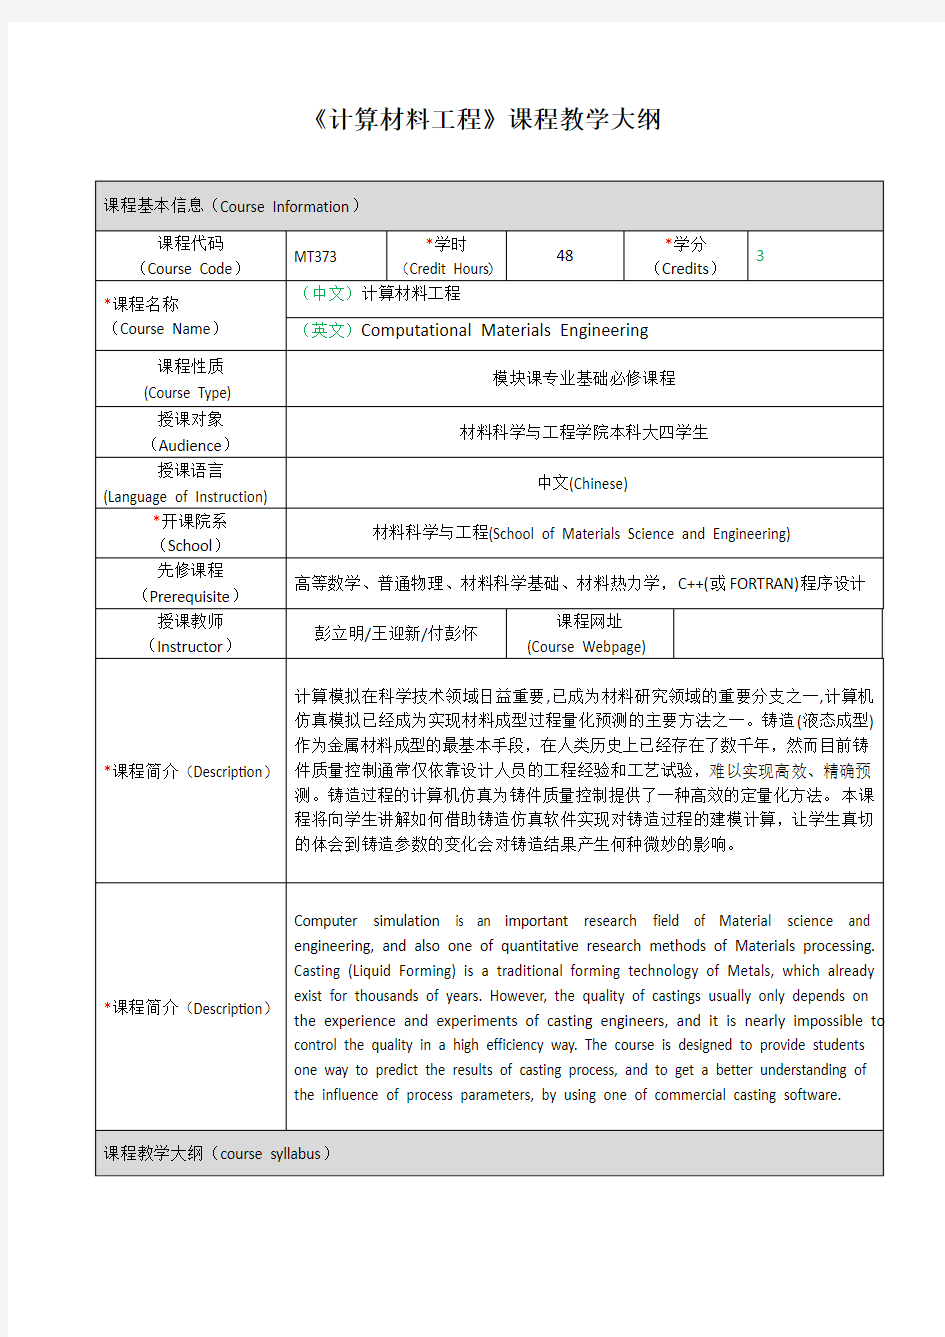 计算材料工程课程教学大纲-上海交通大学-材料科学与工程学院